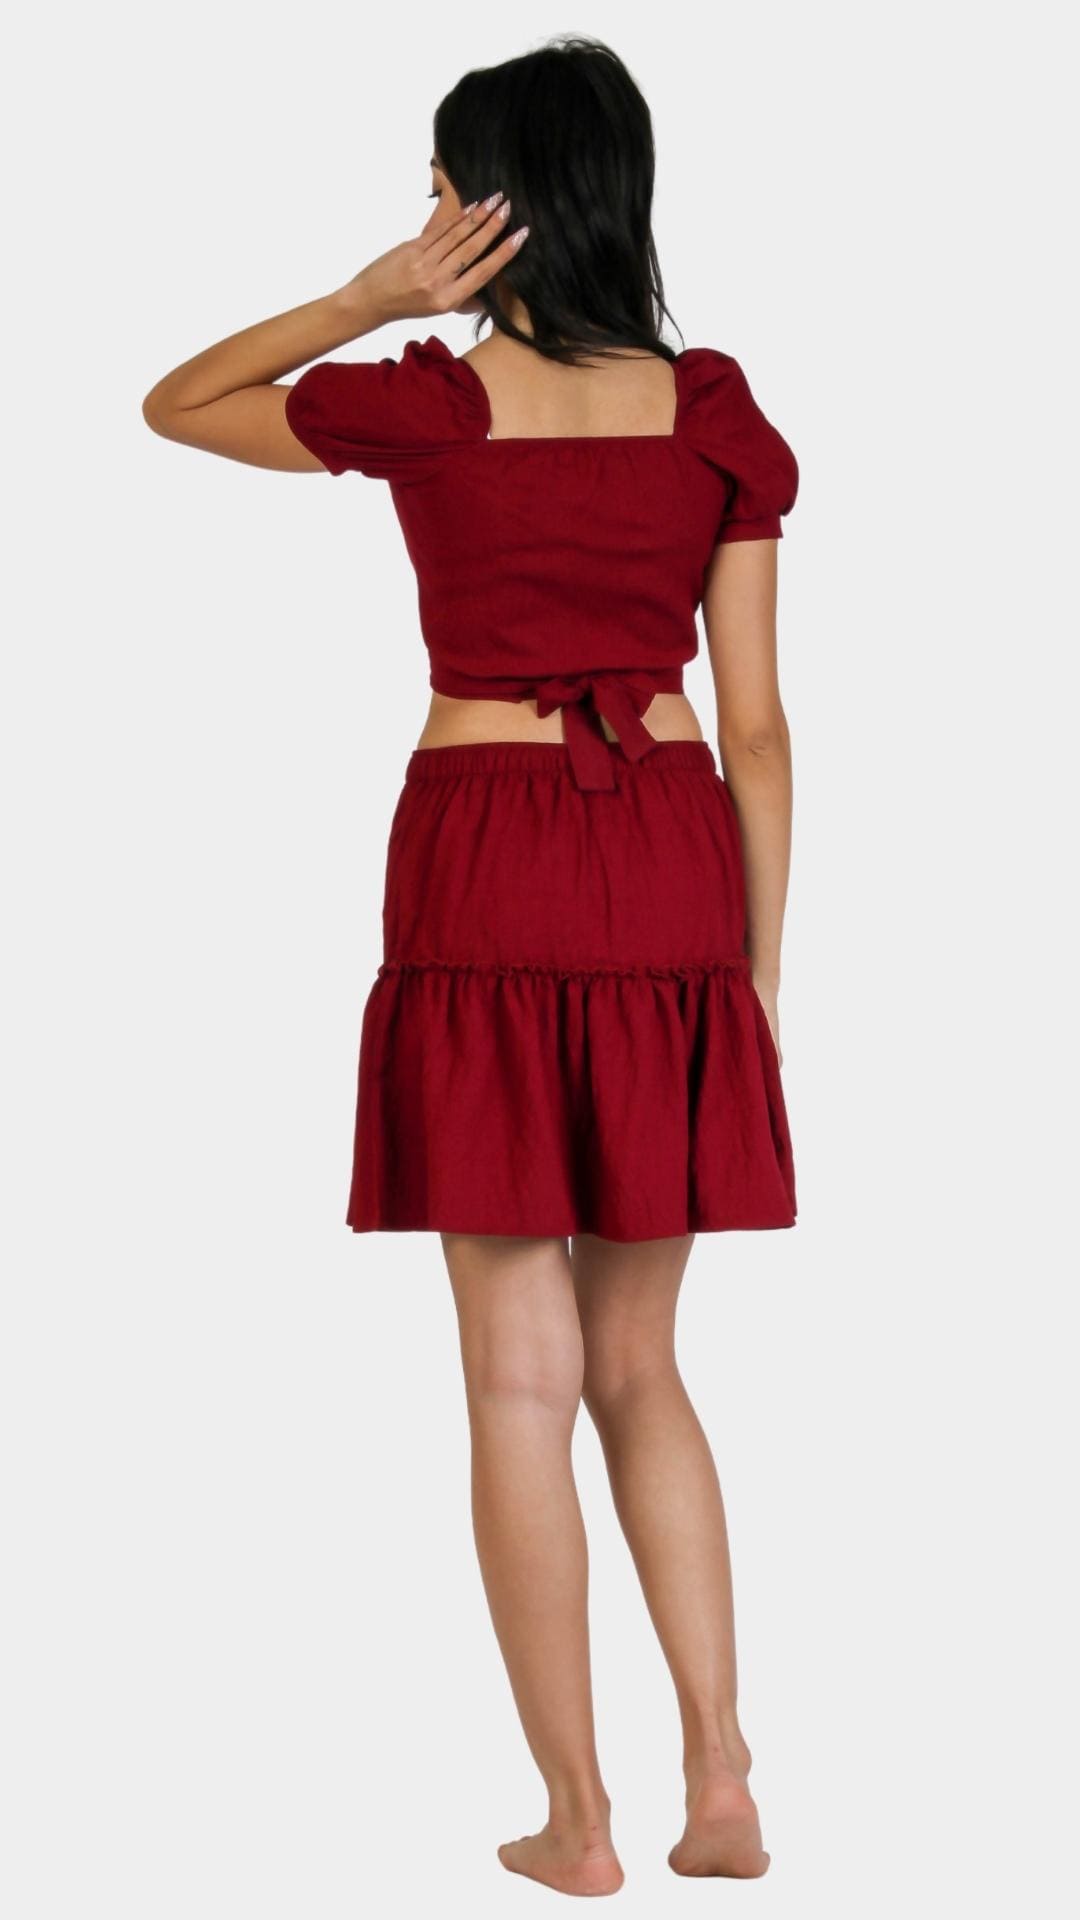 Short-Sleeve Crop Top With High Waist Skirt